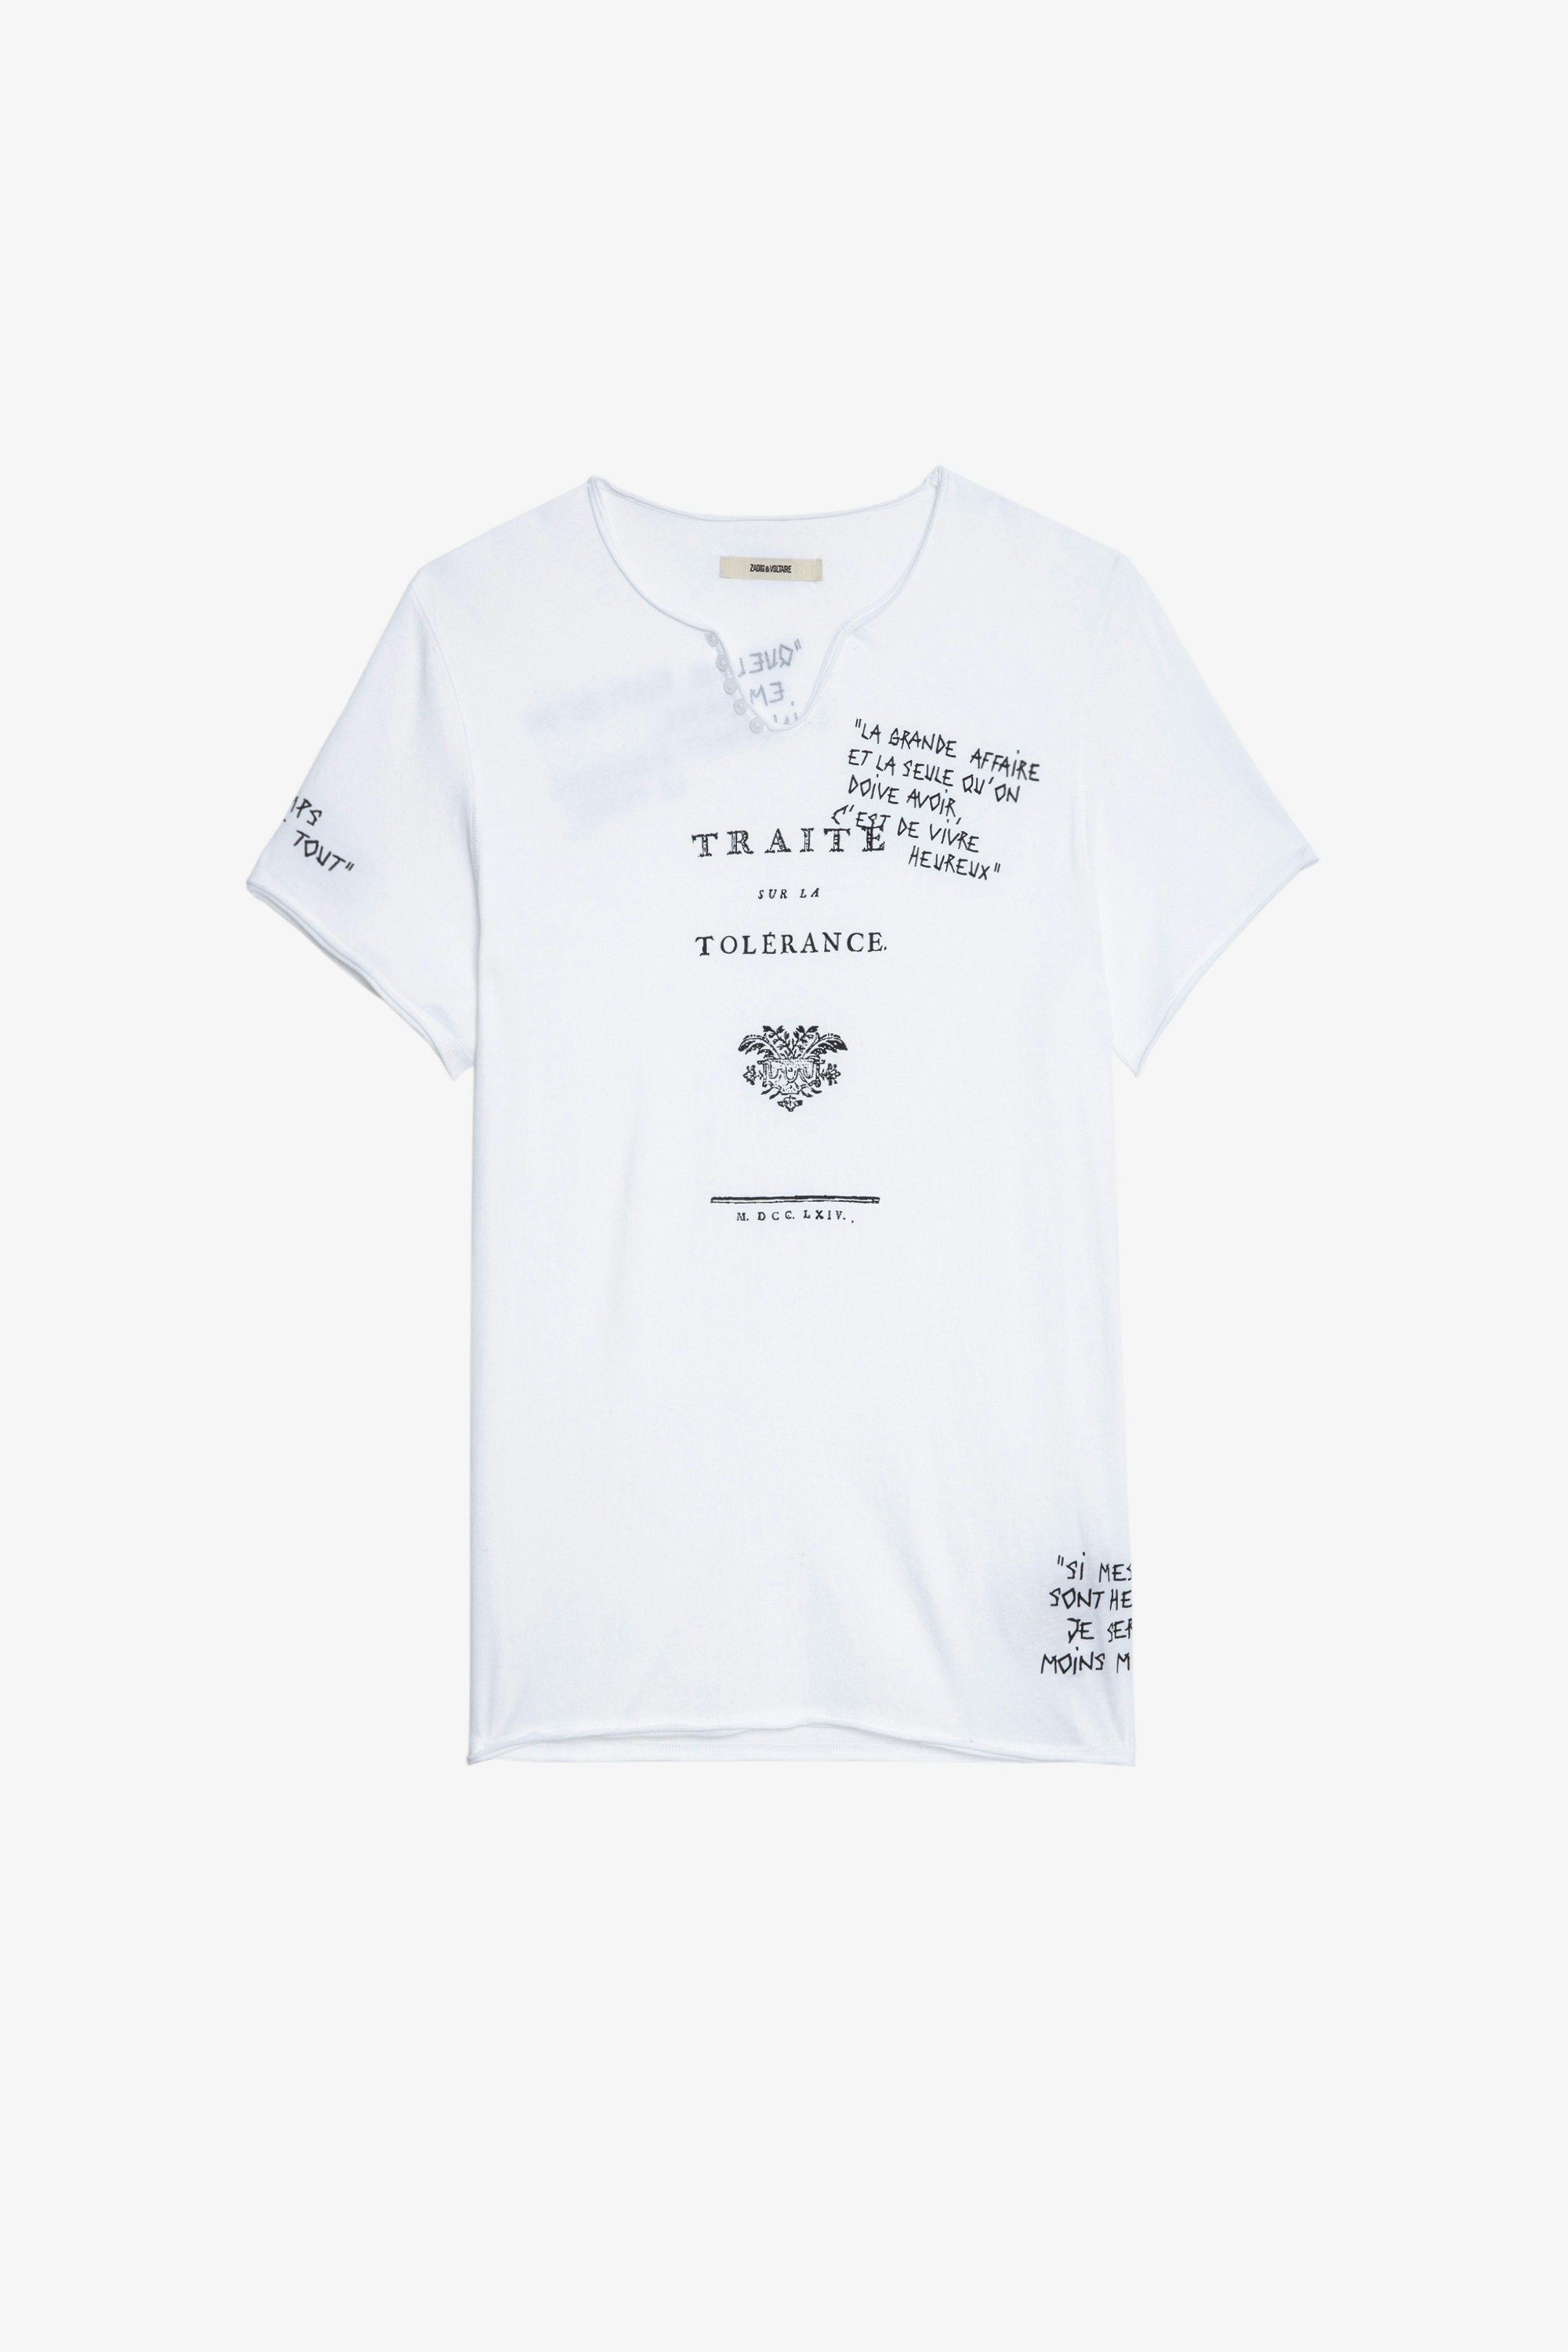 Monastir T-shirt Men’s white cotton Henley T-shirt with short sleeves and “Traité de la Tolérance” quotes